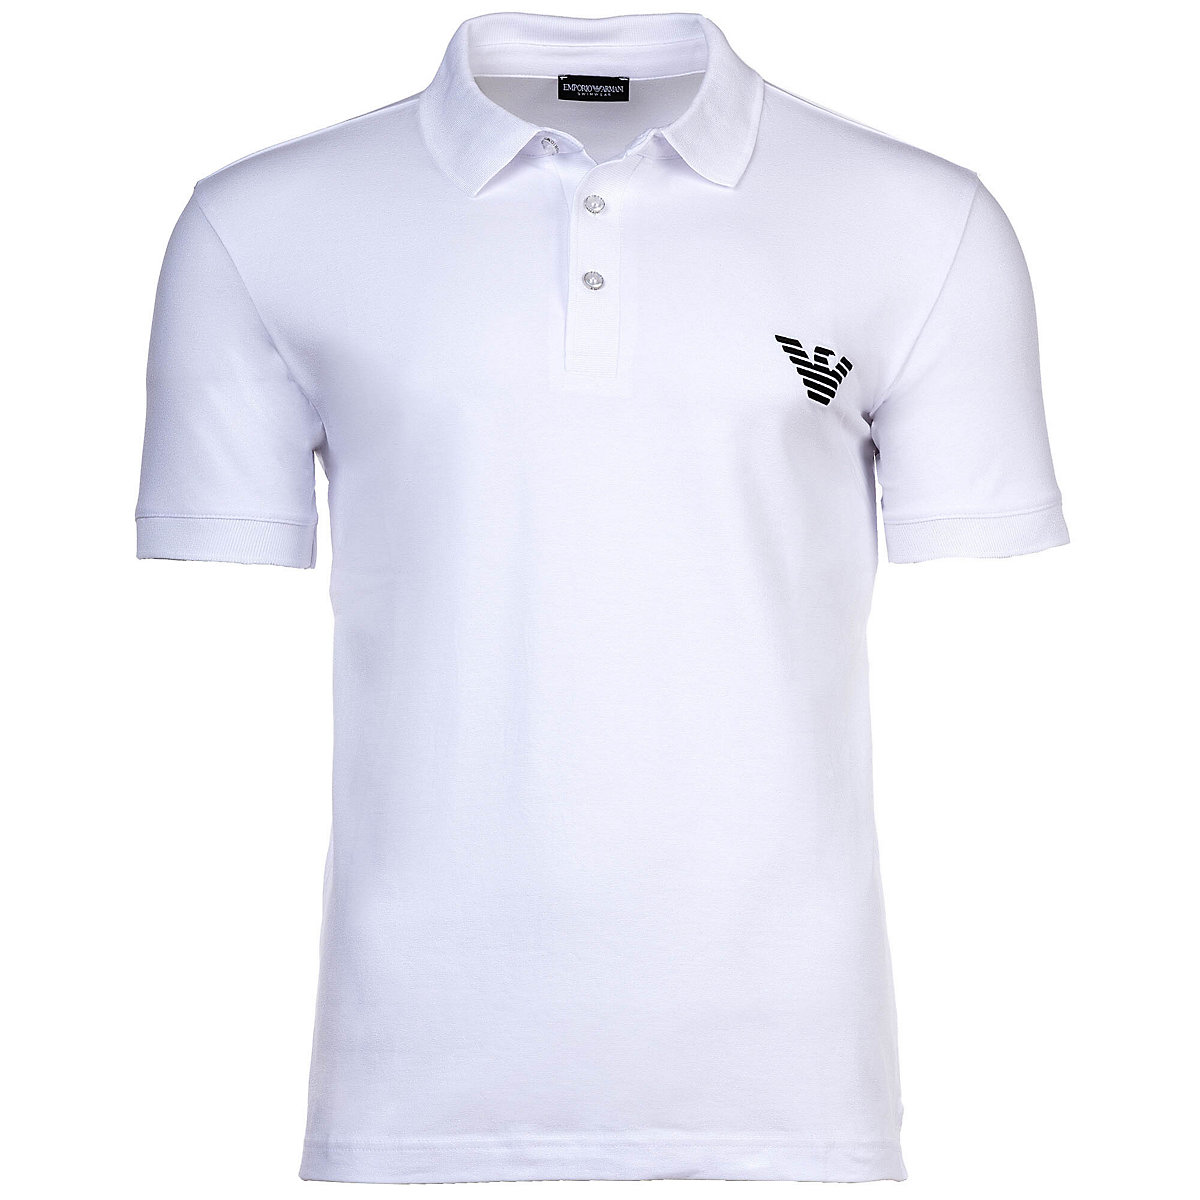 Emporio Armani Herren Poloshirt ESSENTIAL Kurzarm Knopfleiste einfarbig Poloshirts weiß